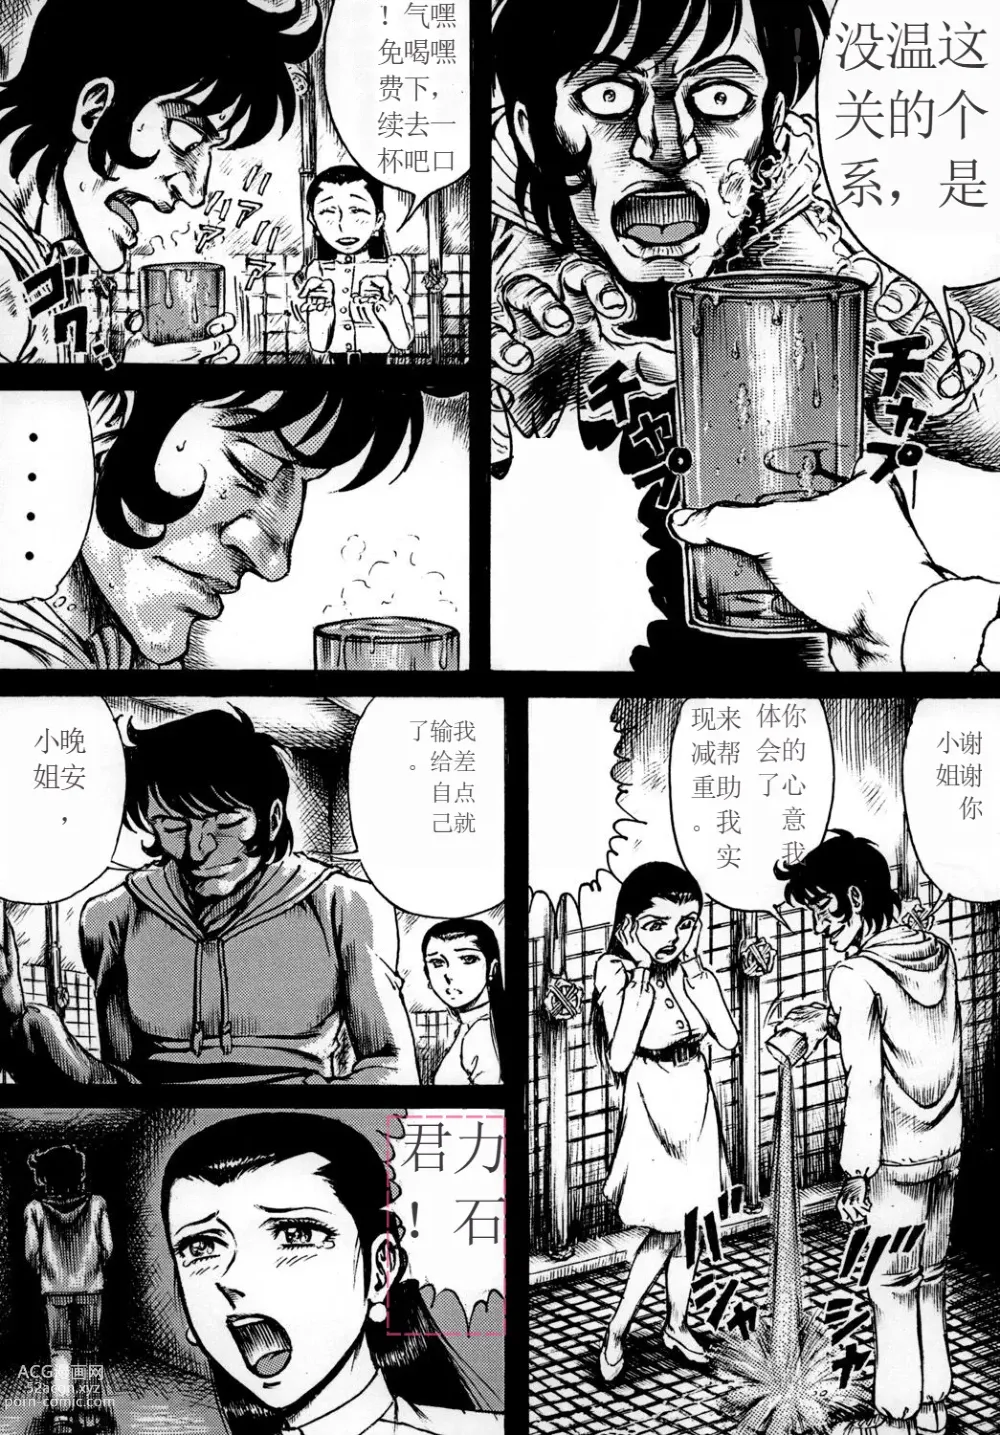 Page 7 of doujinshi Youjinbou Otaku Matsuri 7